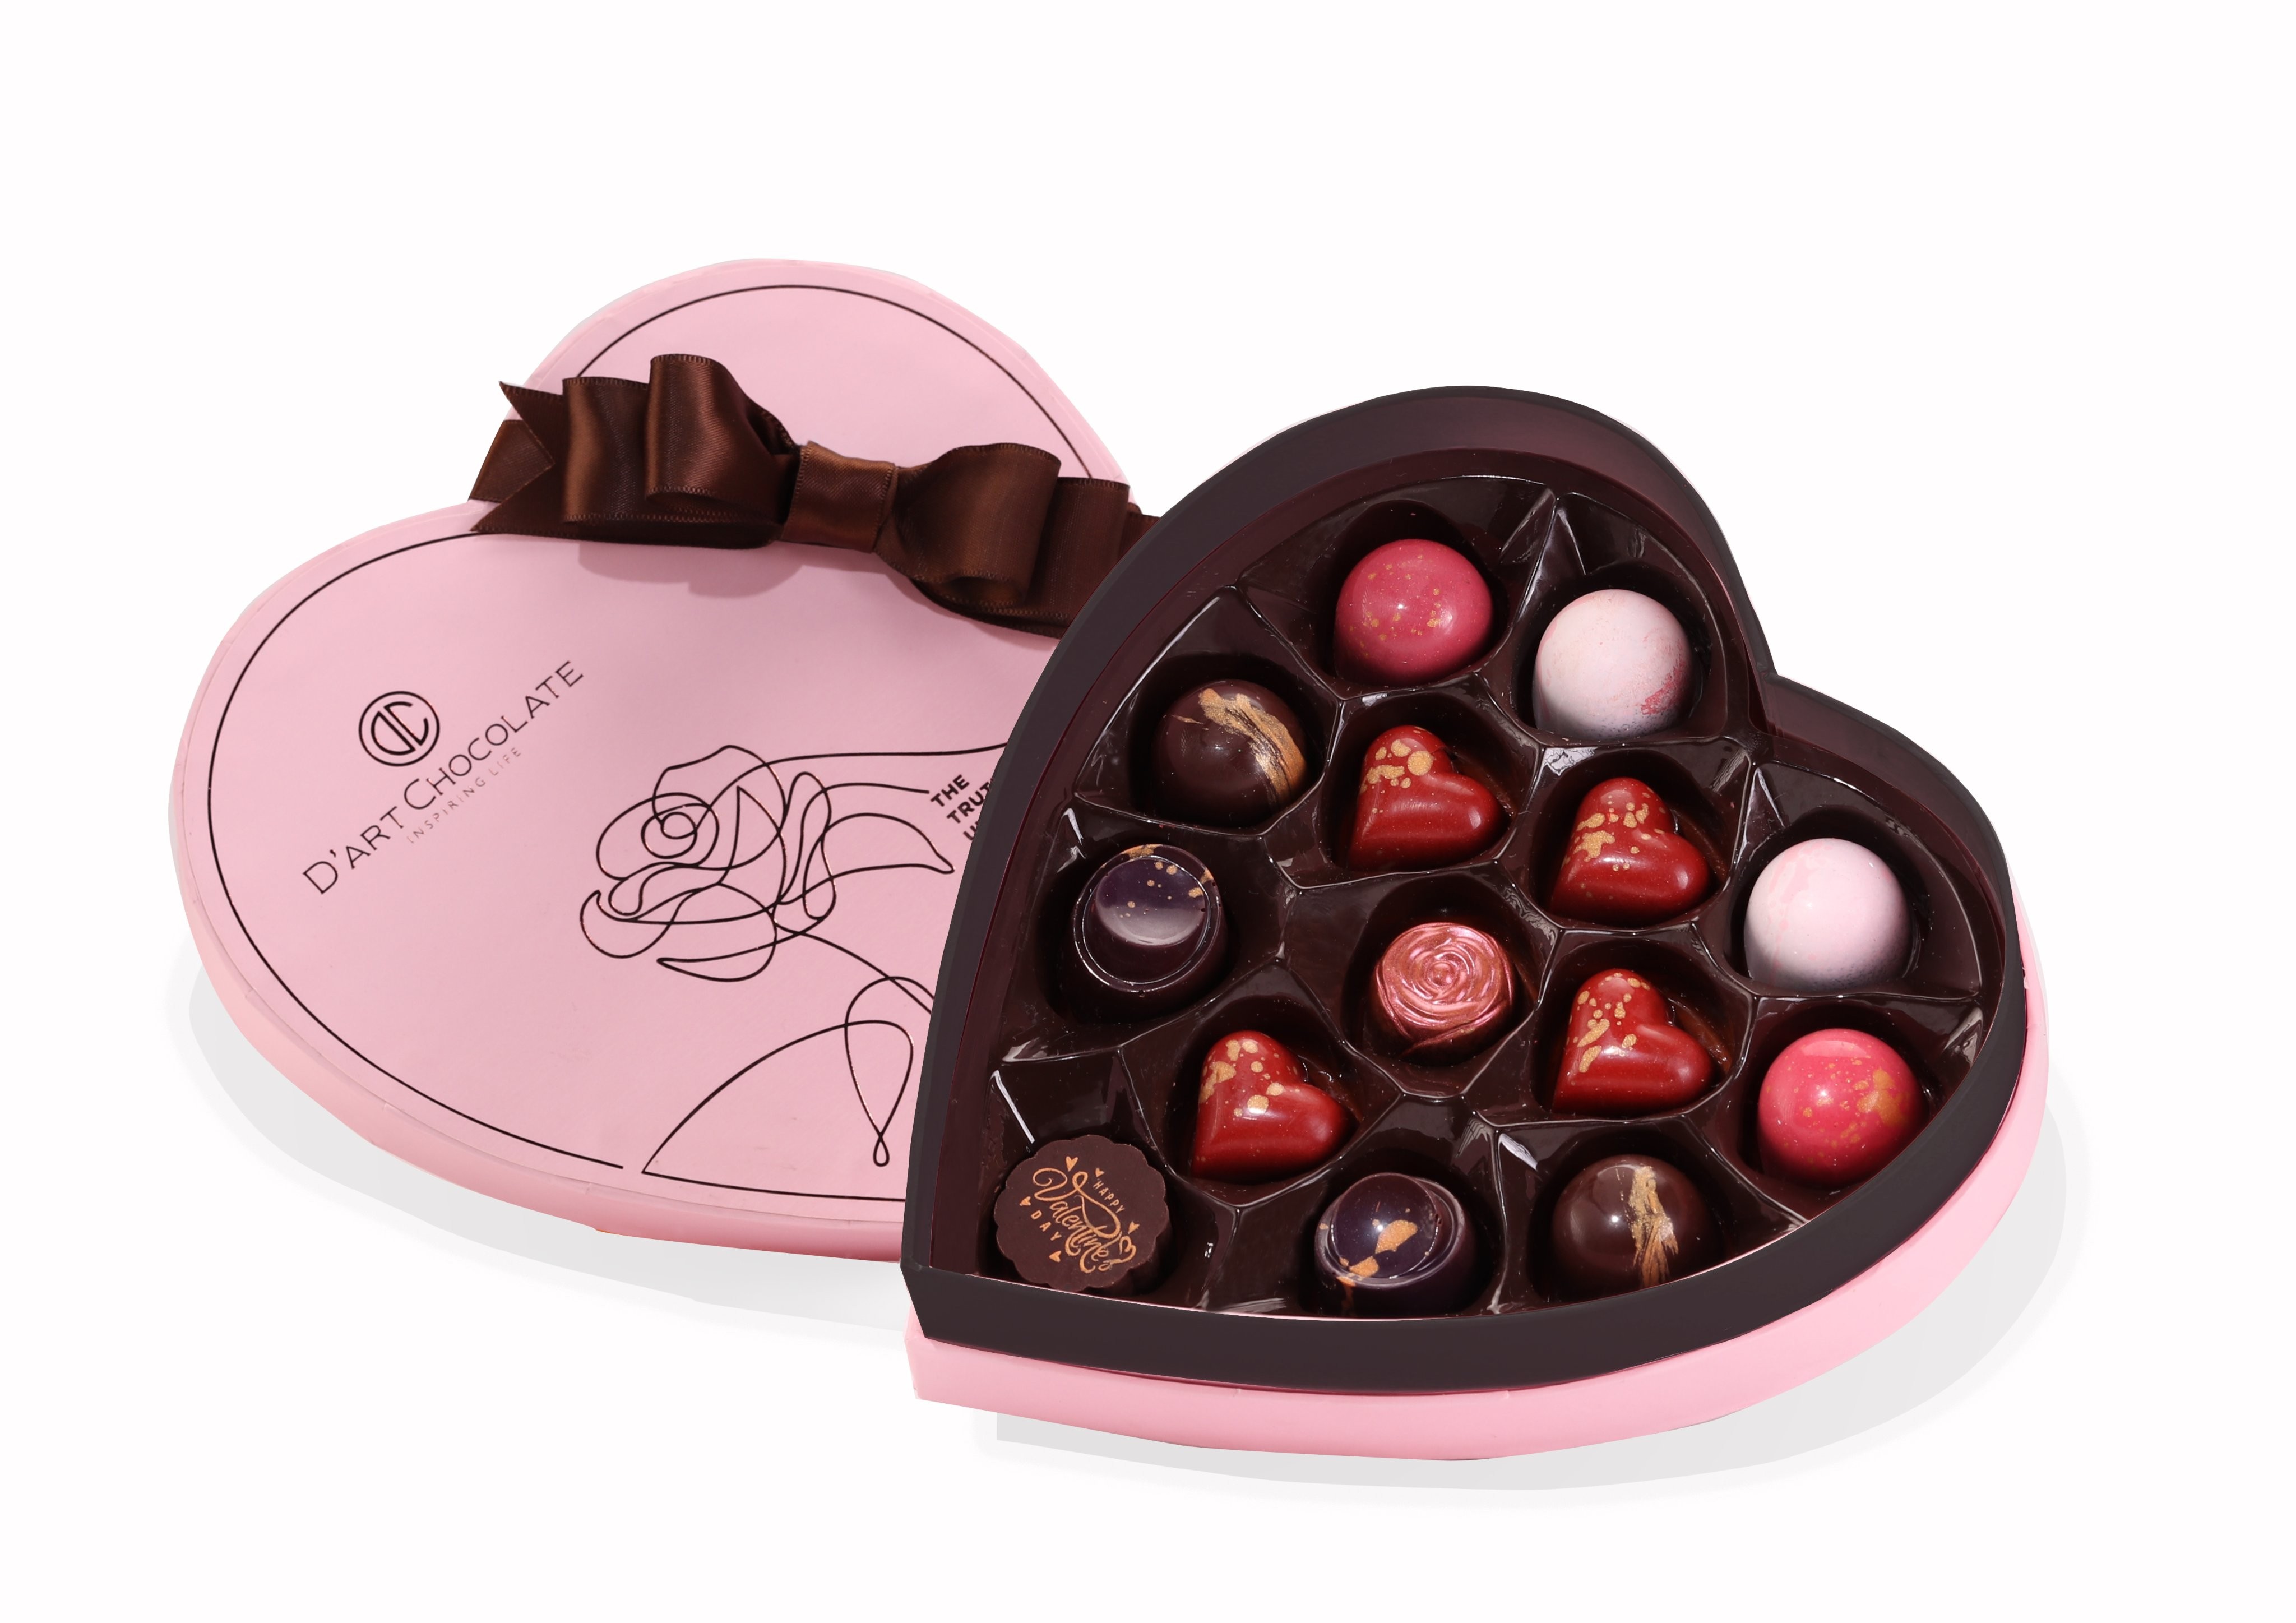 Socola Valentine: Socola Valentine là món quà vô cùng ý nghĩa trong ngày lễ tình nhân. Cùng khám phá những loại socola đặc biệt dành cho người yêu, bạn bè và gia đình để chia sẻ niềm hạnh phúc đến với những người thân yêu nhất.